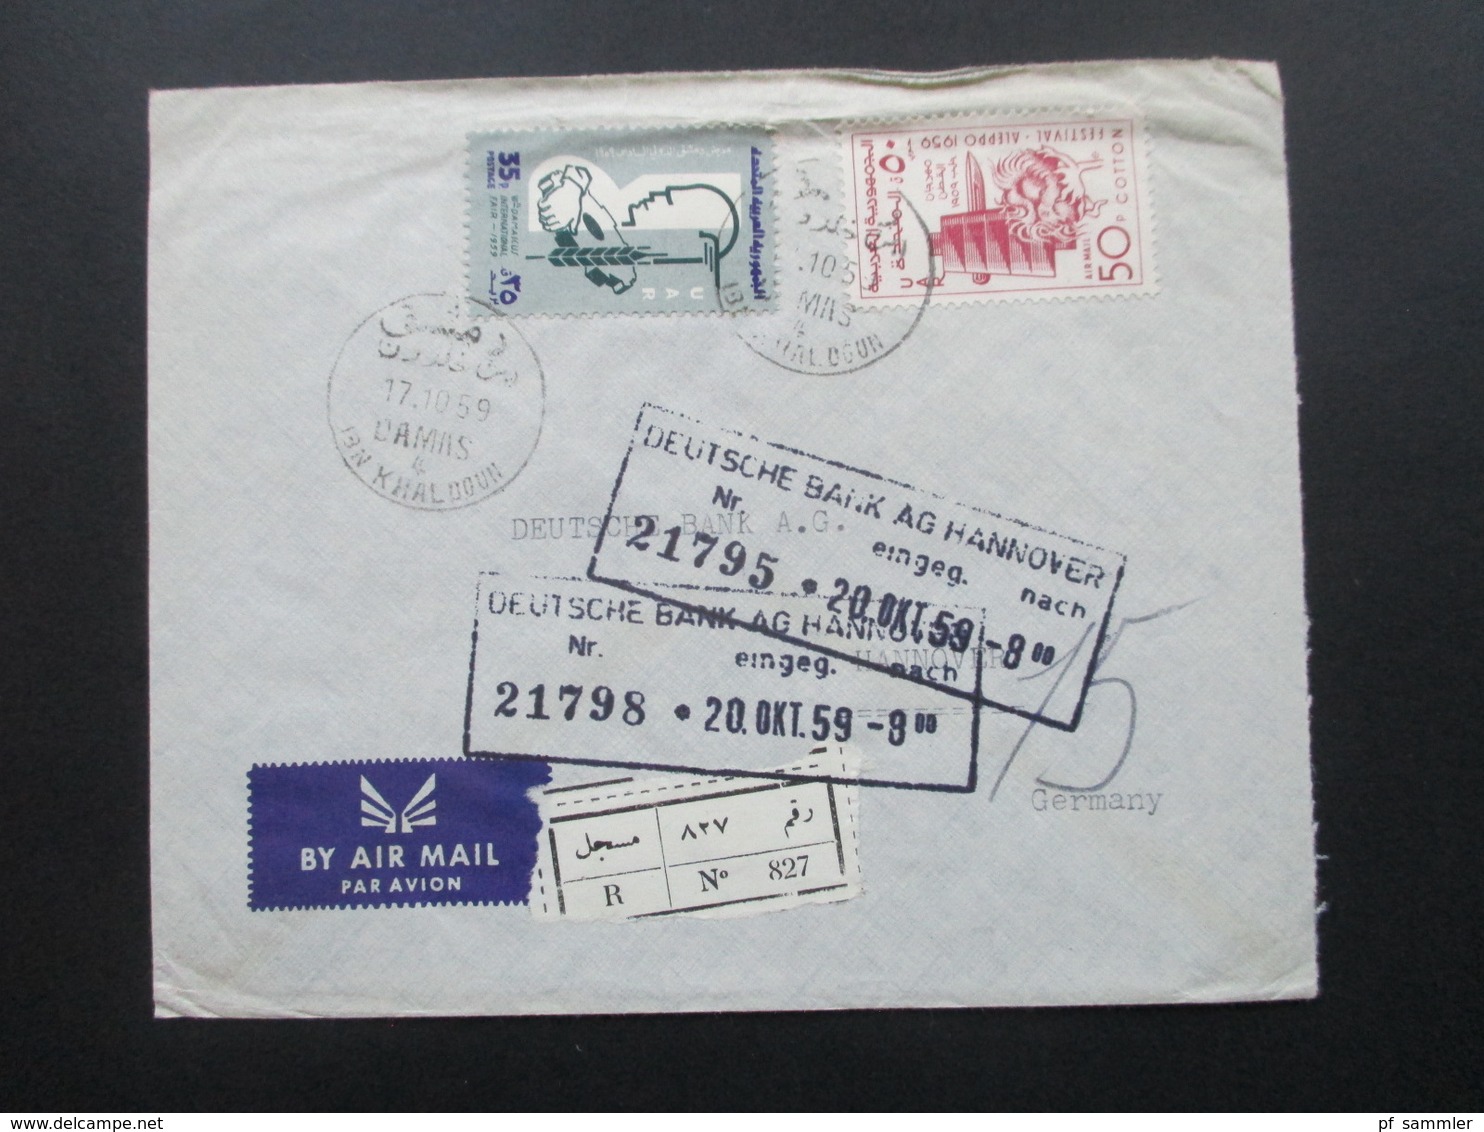 Syrien / UAR 1959 Air Mail / Luftpost Societe De Banques Reunies S.A.S. Einschreiben R No 827 / Arabische Schrift - Syrien